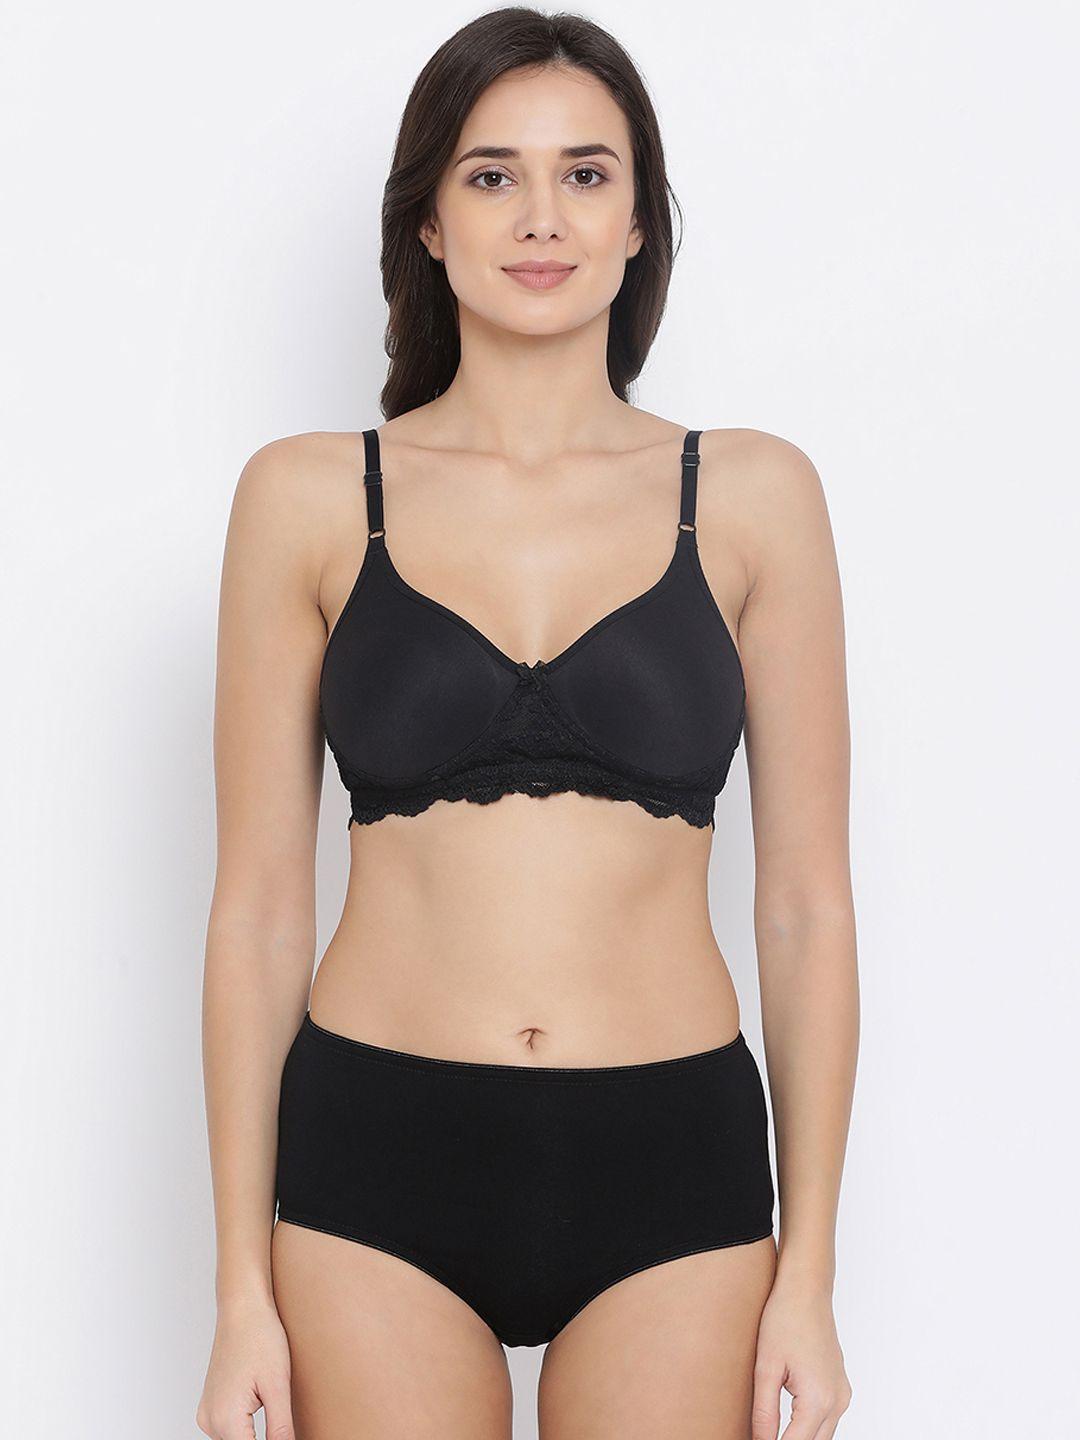 clovia women black solid lingerie set combbp90432b